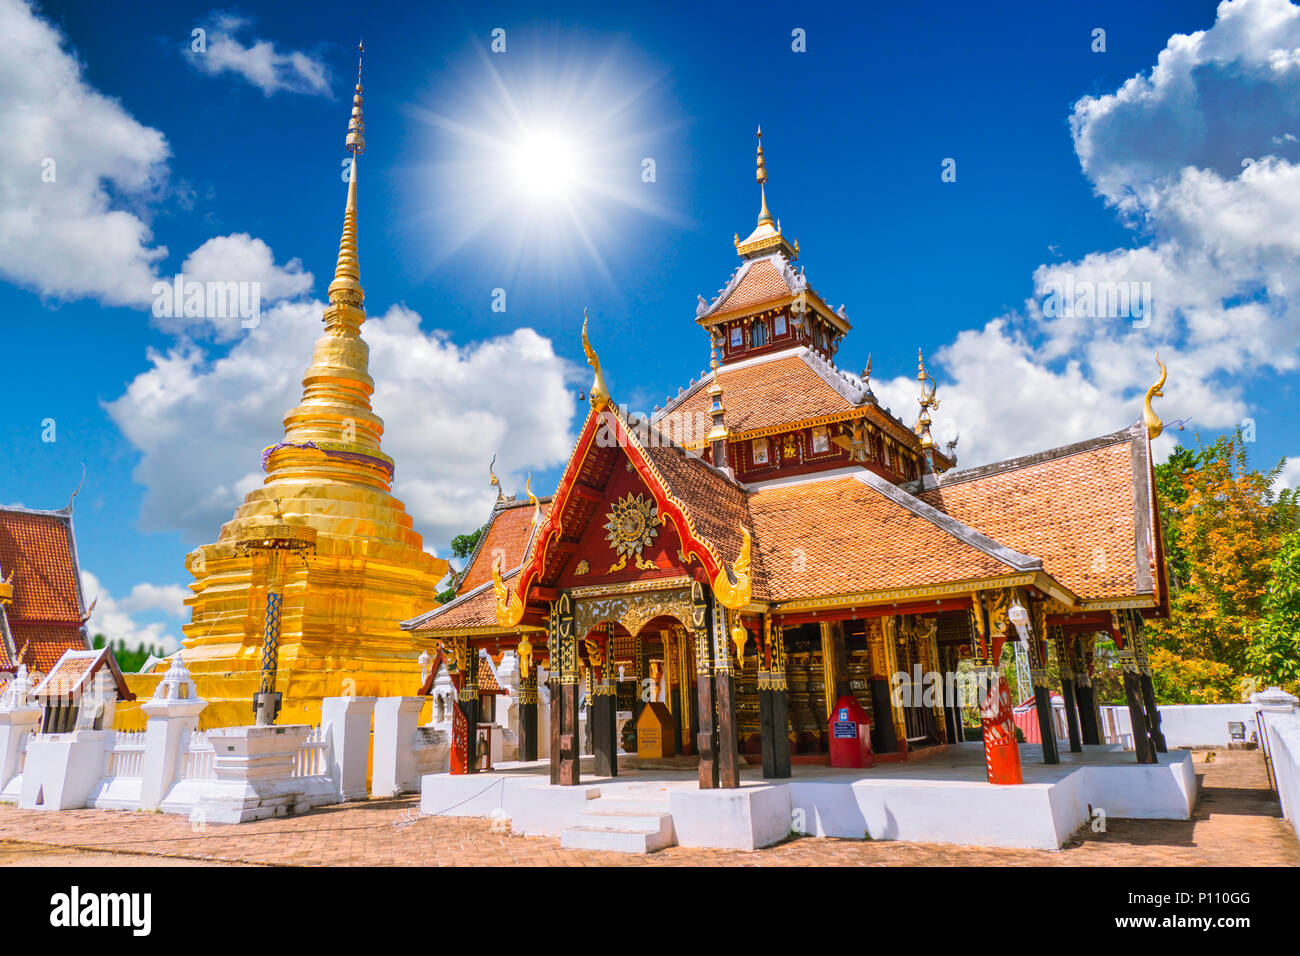 Wat Pong Sanuk Tempel in Lampang, schöne alte Lanna buddhistischen Tempel Architektur an Lampang Thailand vom 27. Februar 2018. Stockfoto